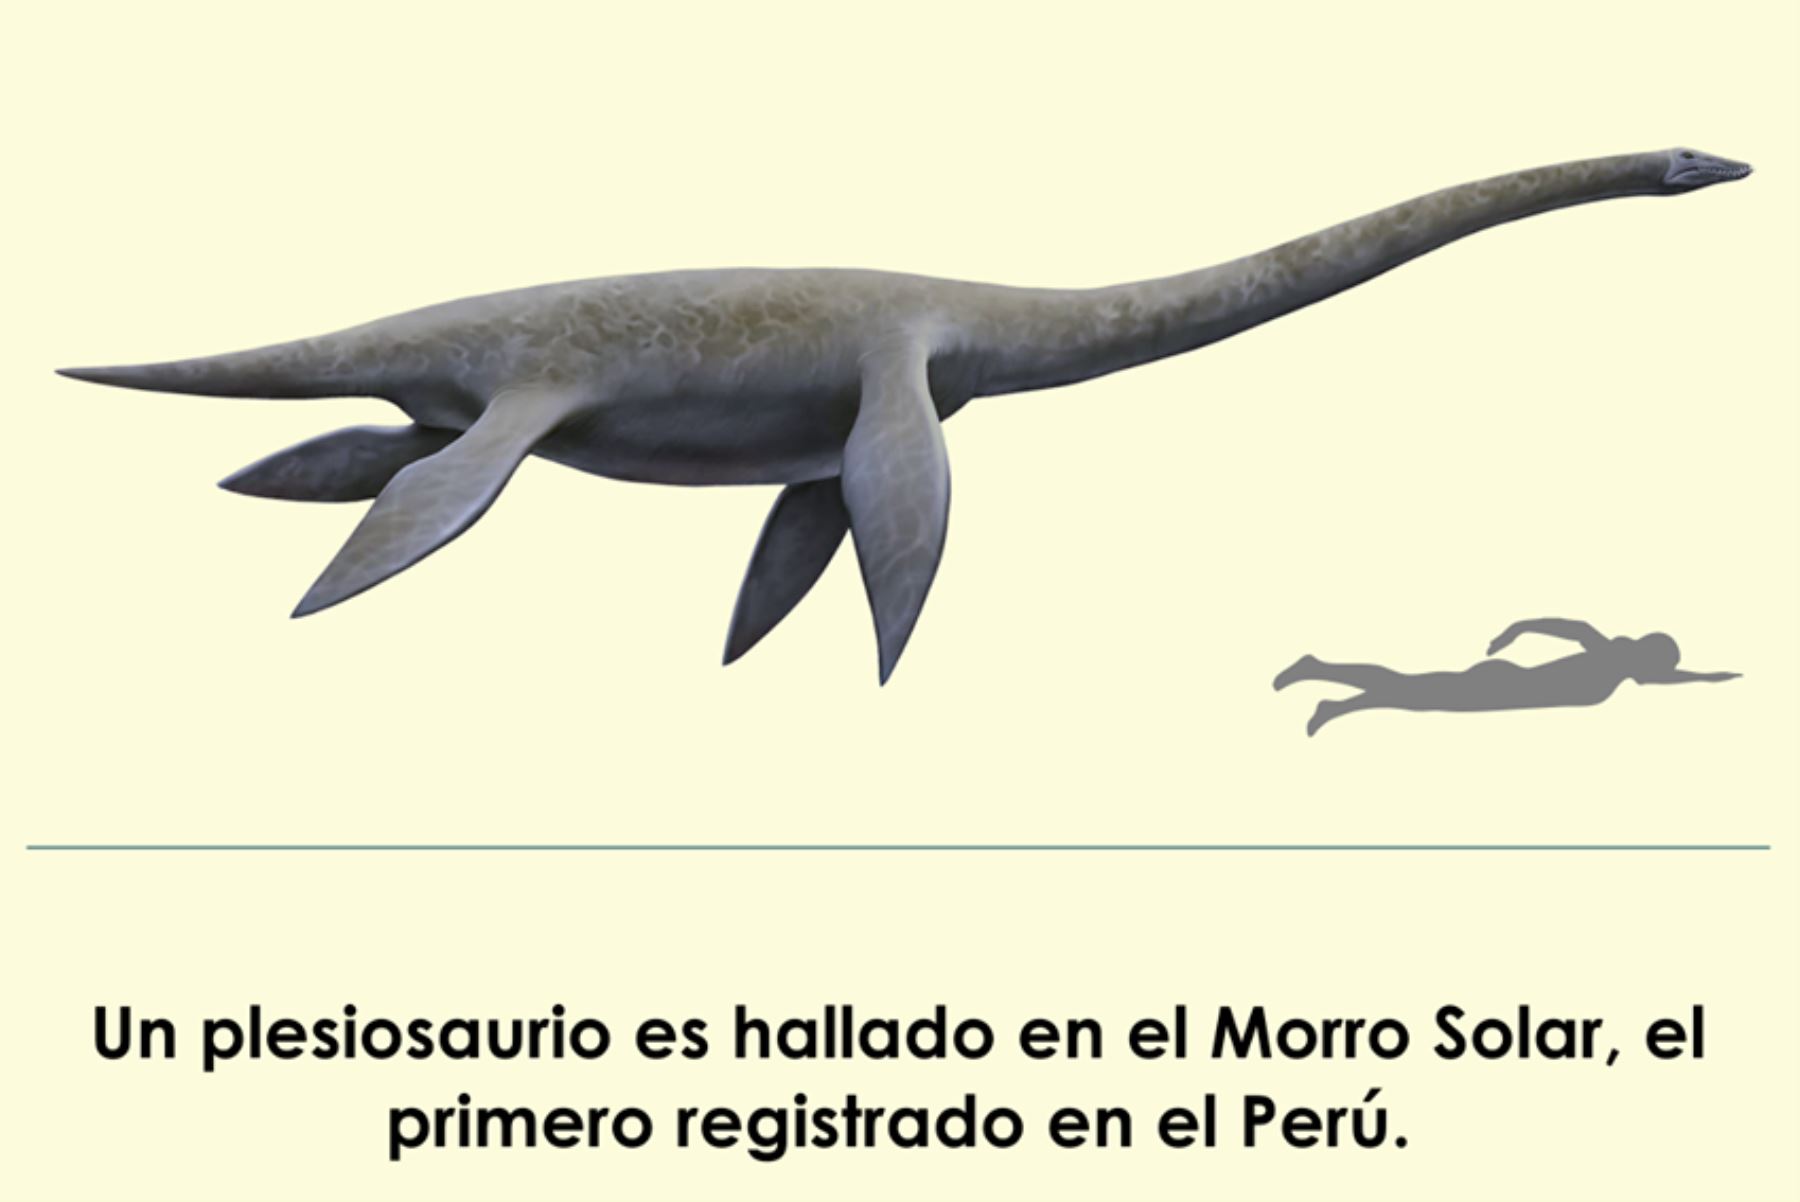 Hallan el primer plesiosaurio en el Morro Solar de Chorrillos